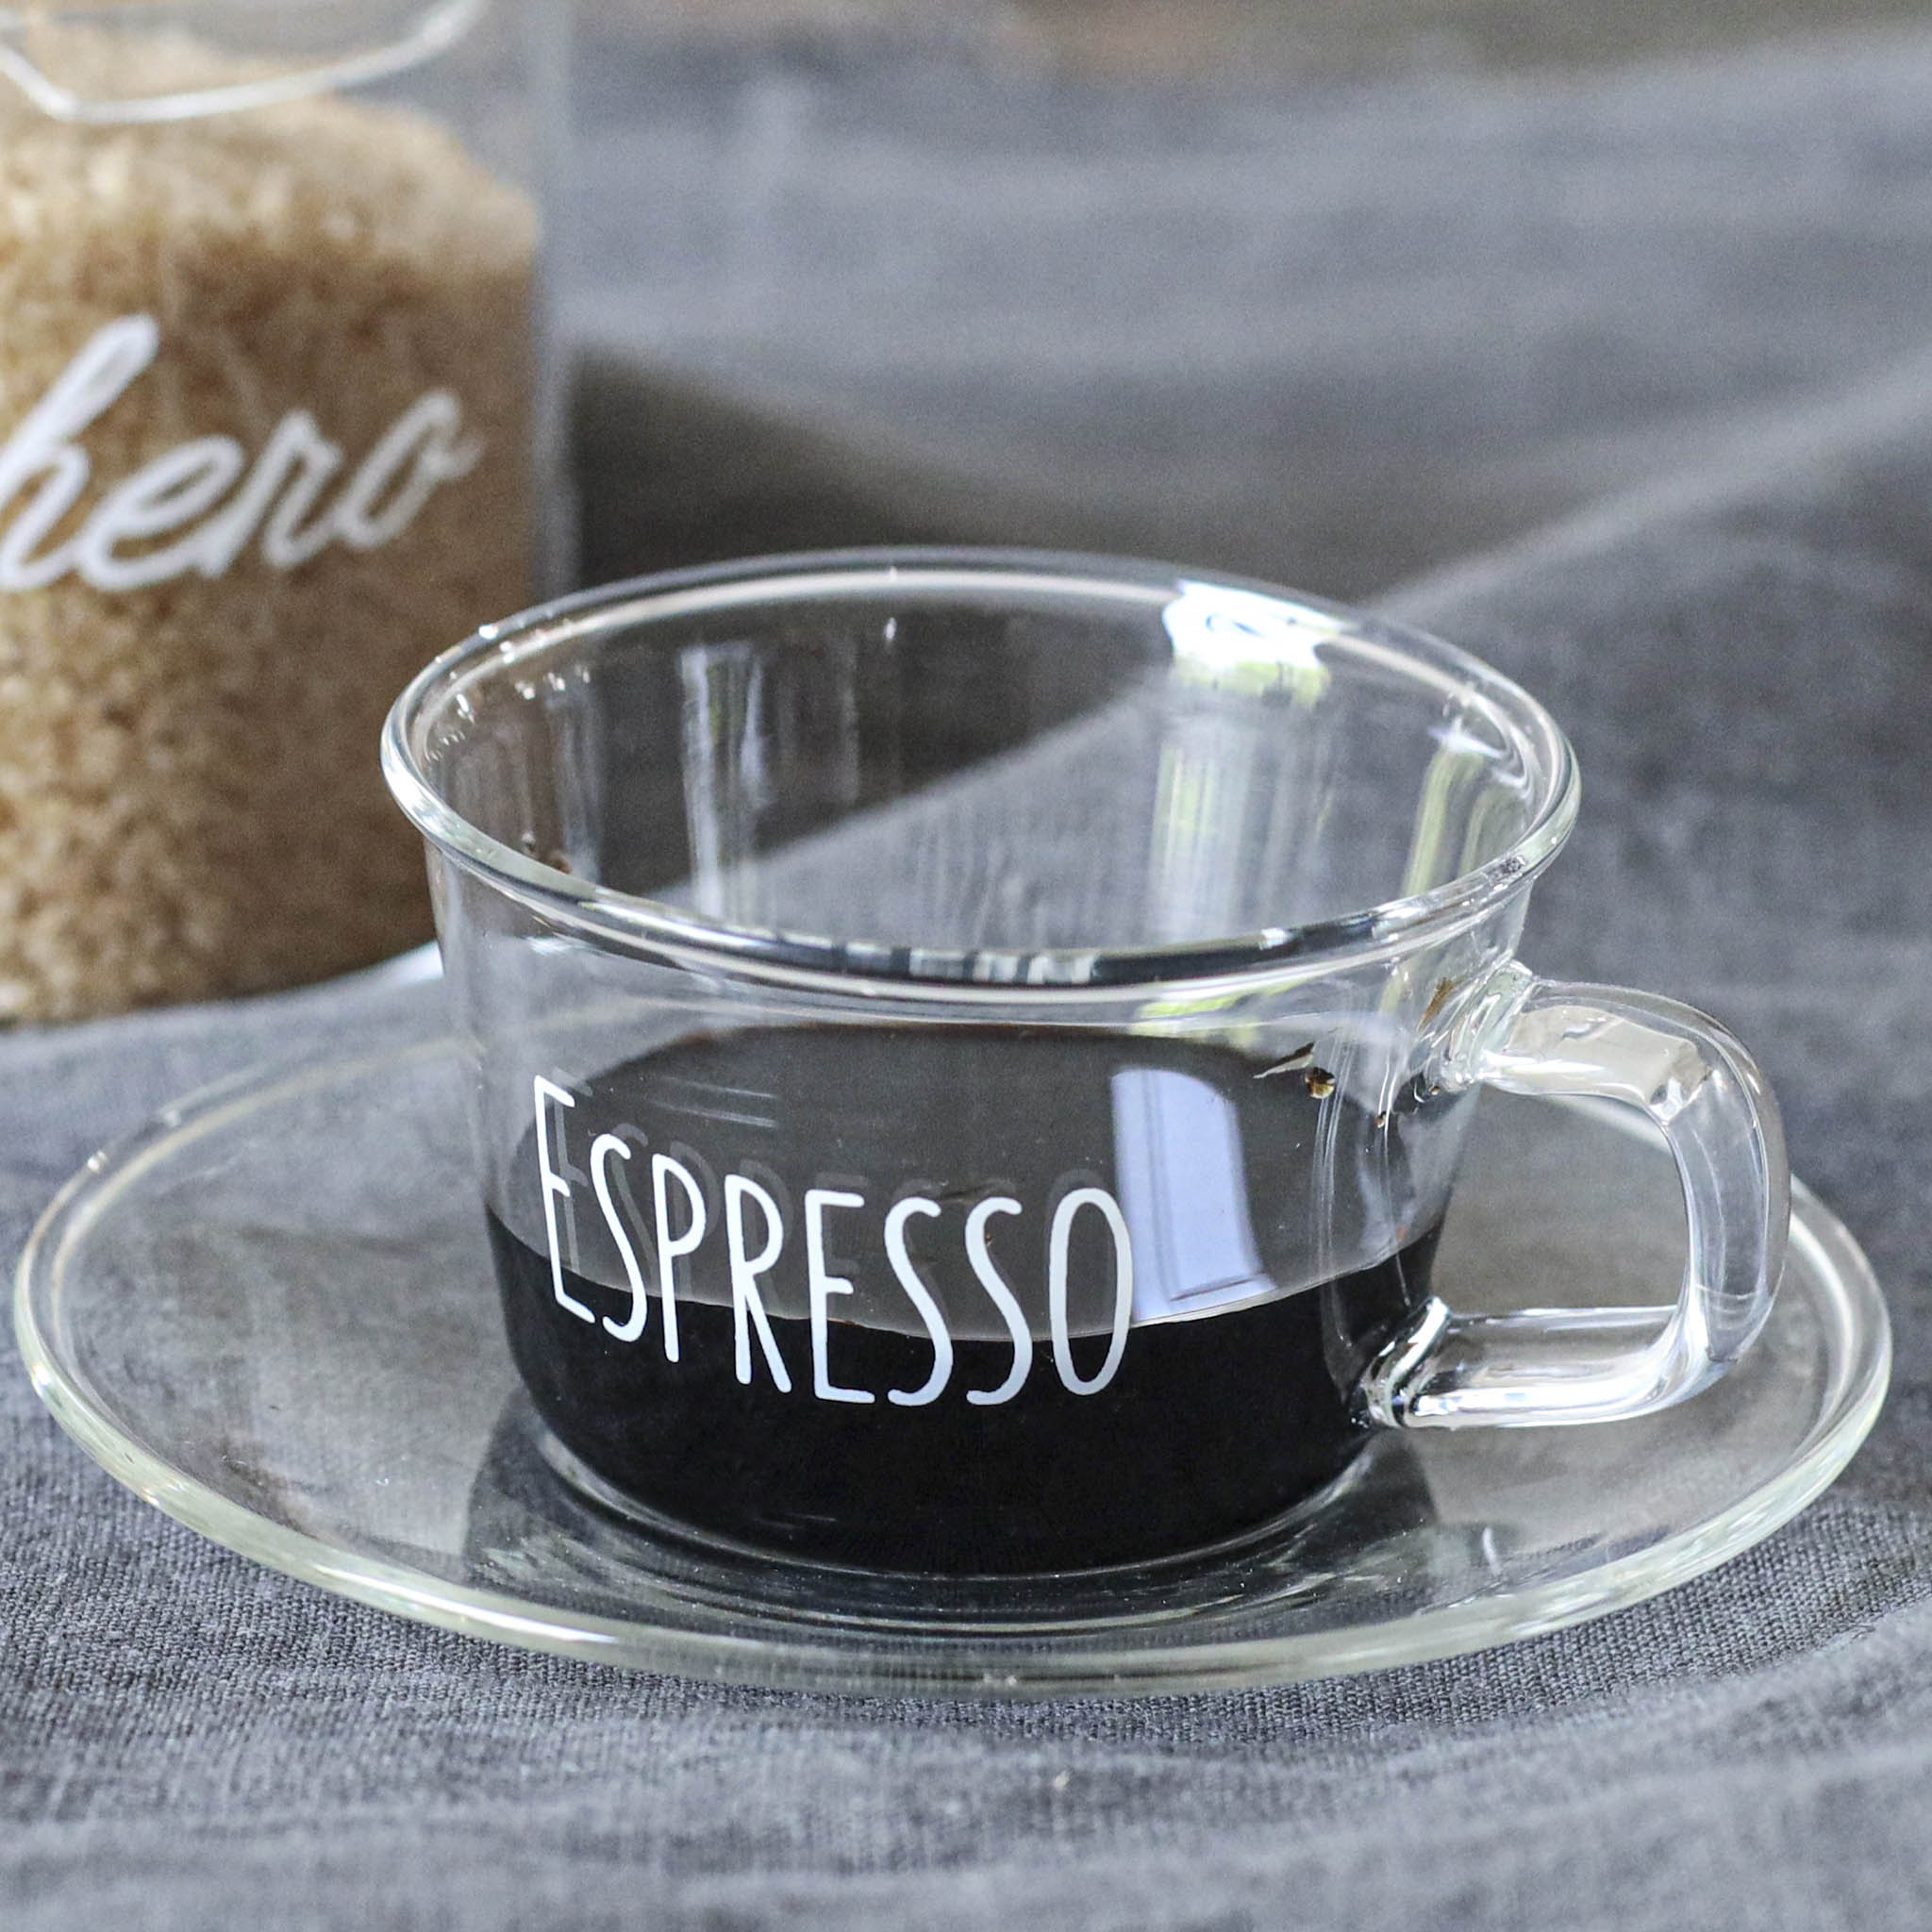 SET 12 Tazze tazzine espresso caffè cappuccino tè latte vetro trasp